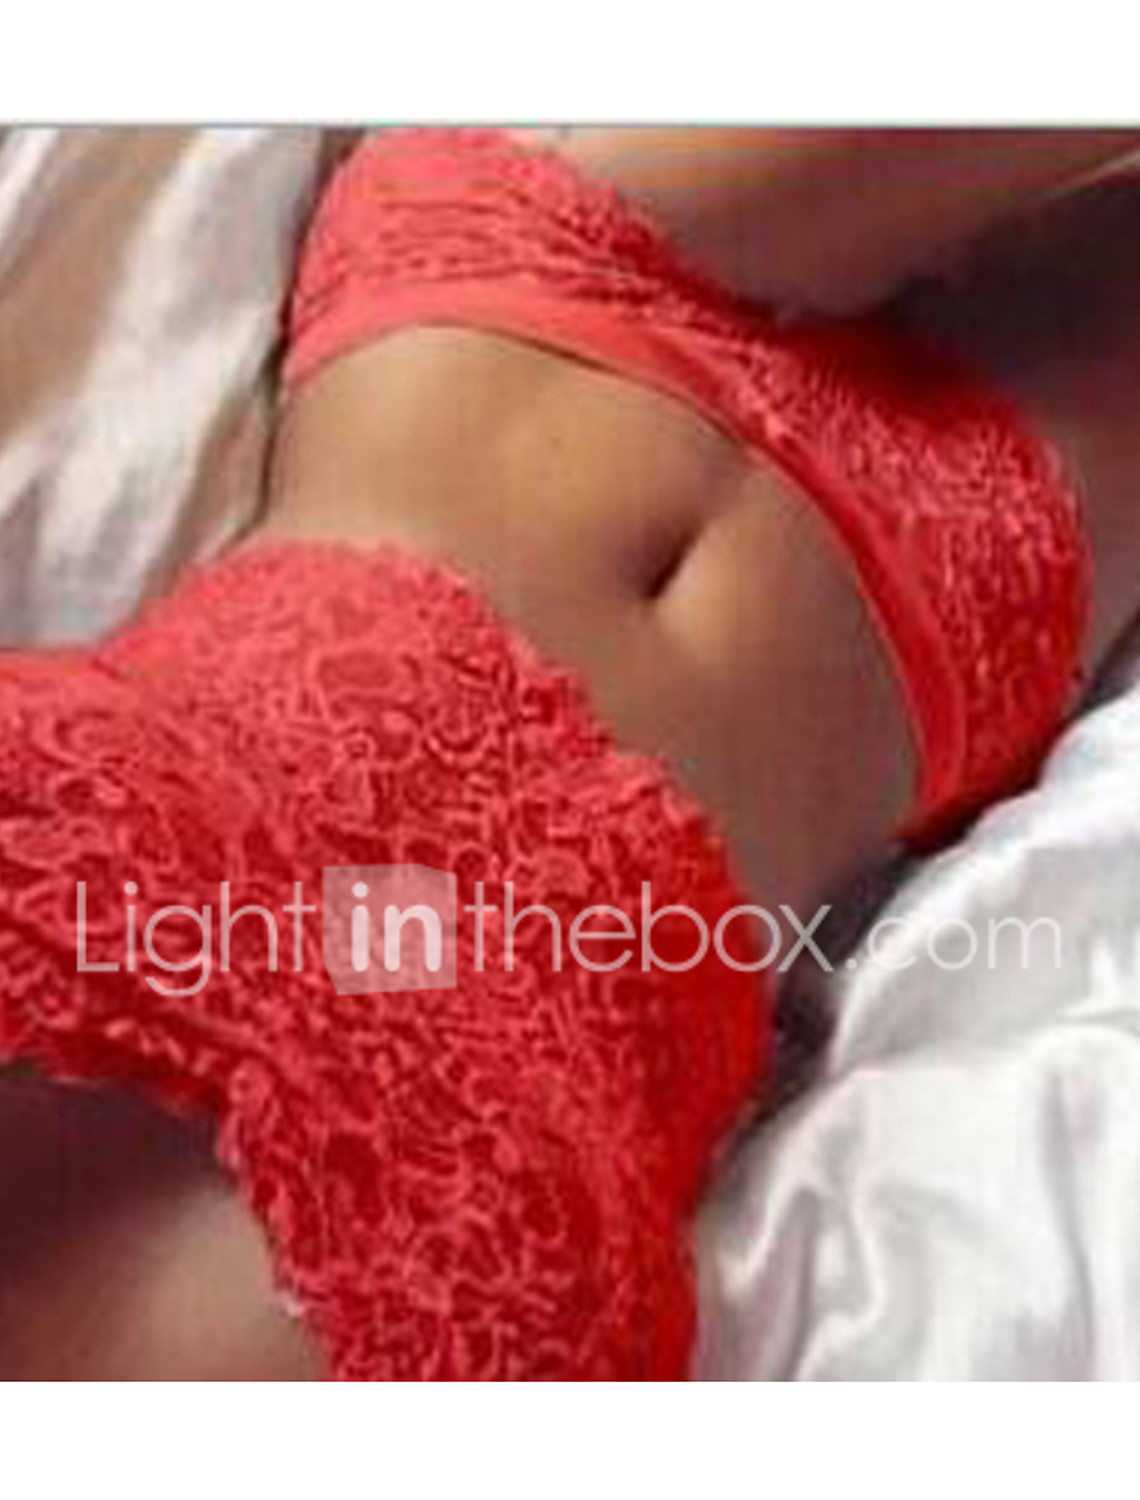 Redshop Women Lingerie Corset Sports Comfortable Lace Push Up Top Bra+Pants Underwear Set